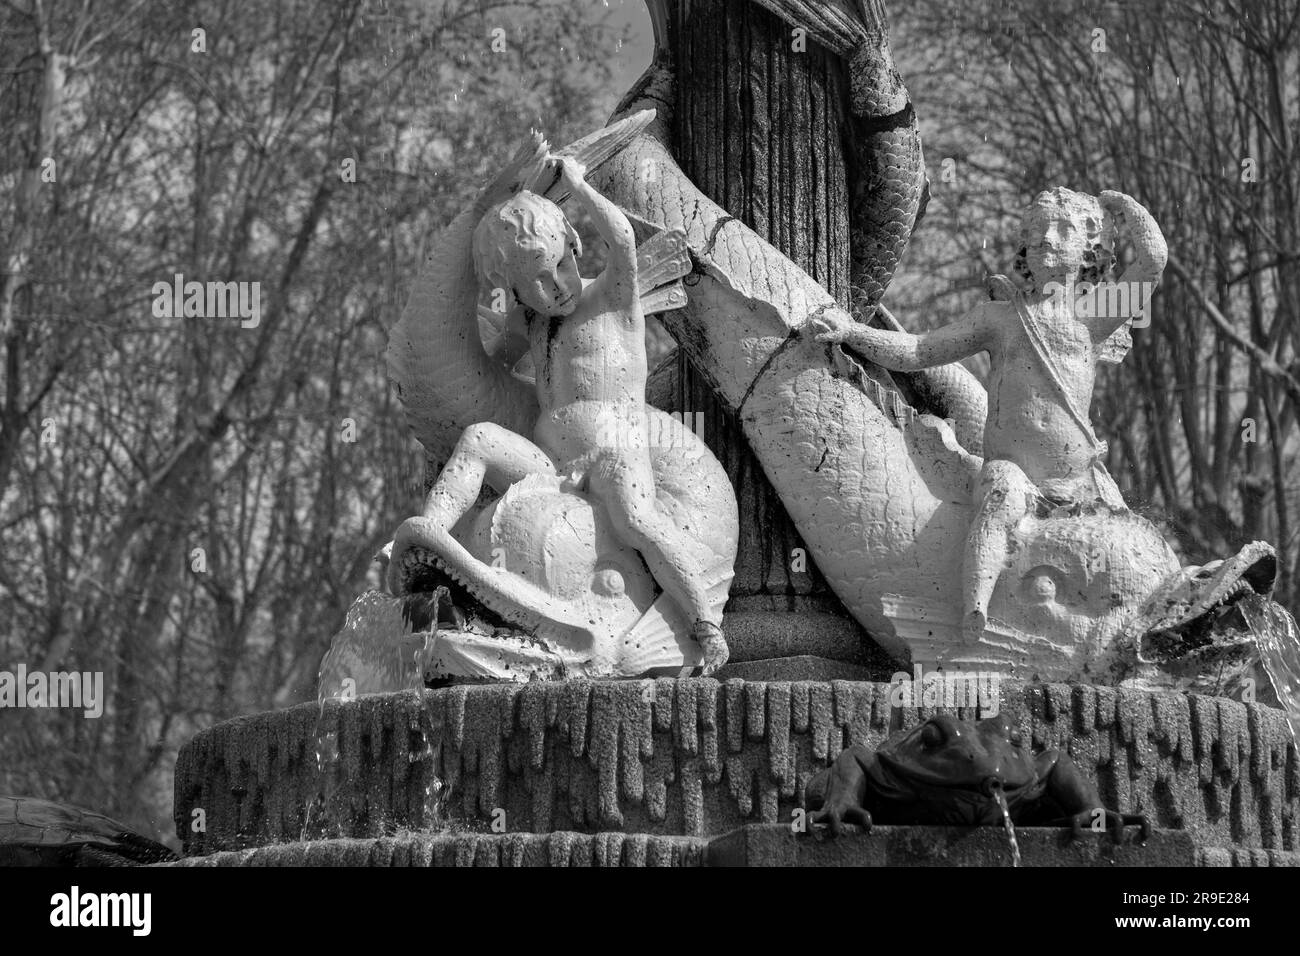 Madrid, Espagne - 16 FÉVRIER 2022 : Fontaine avec sculptures en pierre dans le parc Retiro, un grand parc urbain à Madrid, Espagne. Banque D'Images